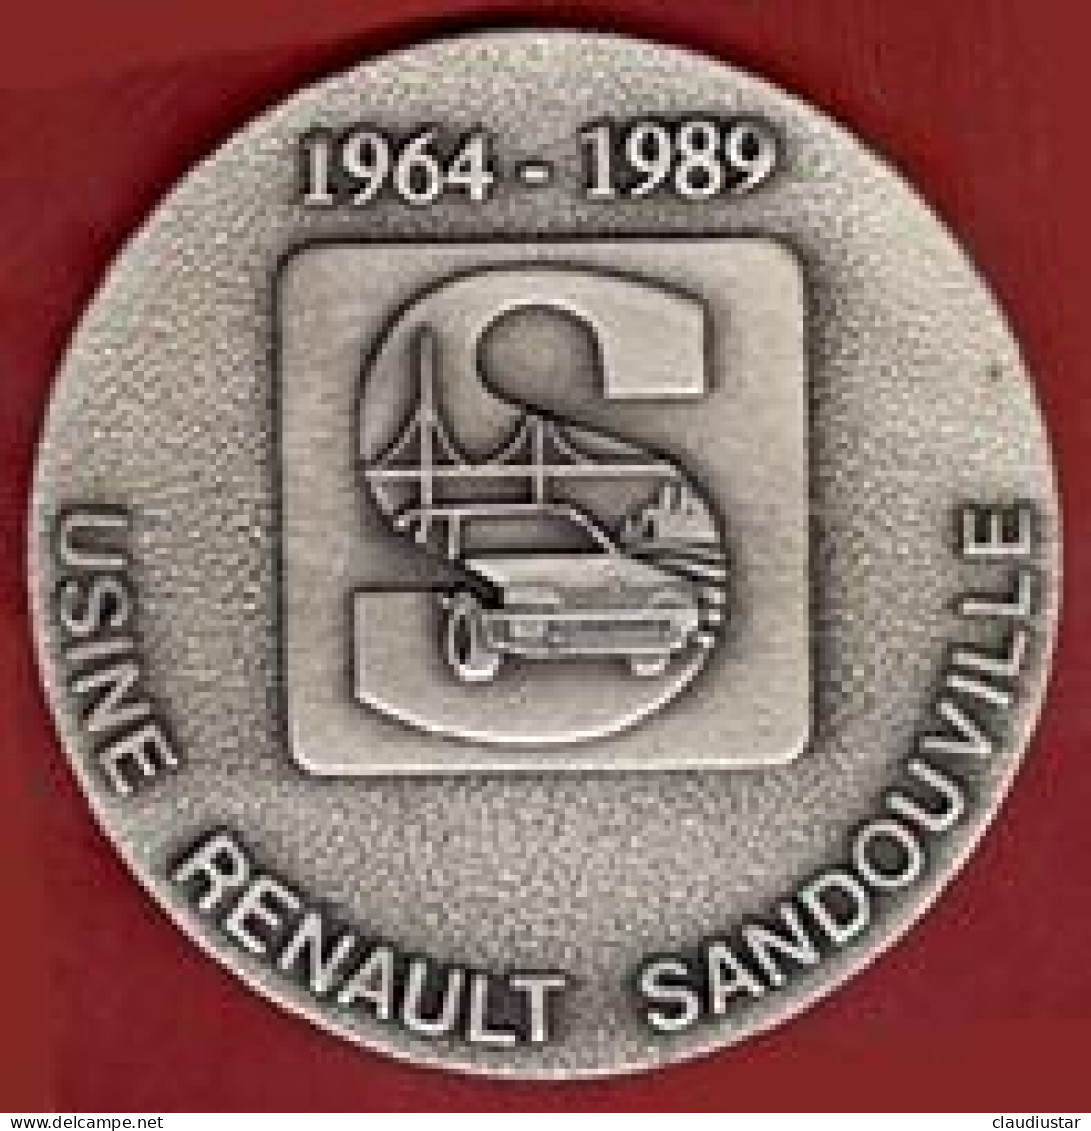 ** MEDAILLE  USINE  RENAULT  SANDOUVILLE  1964 - 1989 ** - Automobile - F1